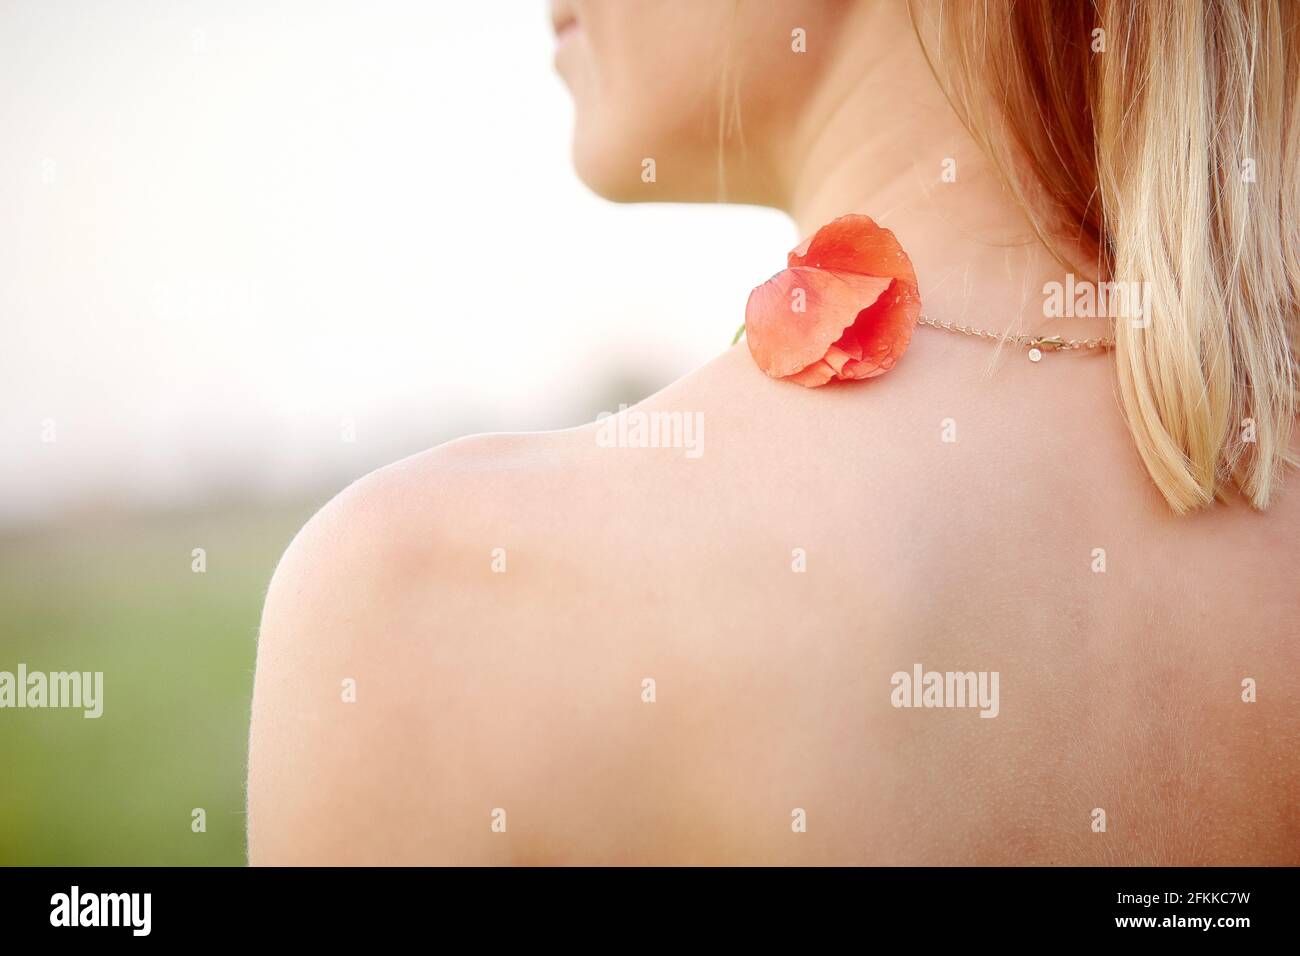 Hermoso hombro de mujer joven con flor roja de amapola. Espacio de copia. Verano delicado fondo. Fotografías de alta calidad Foto de stock